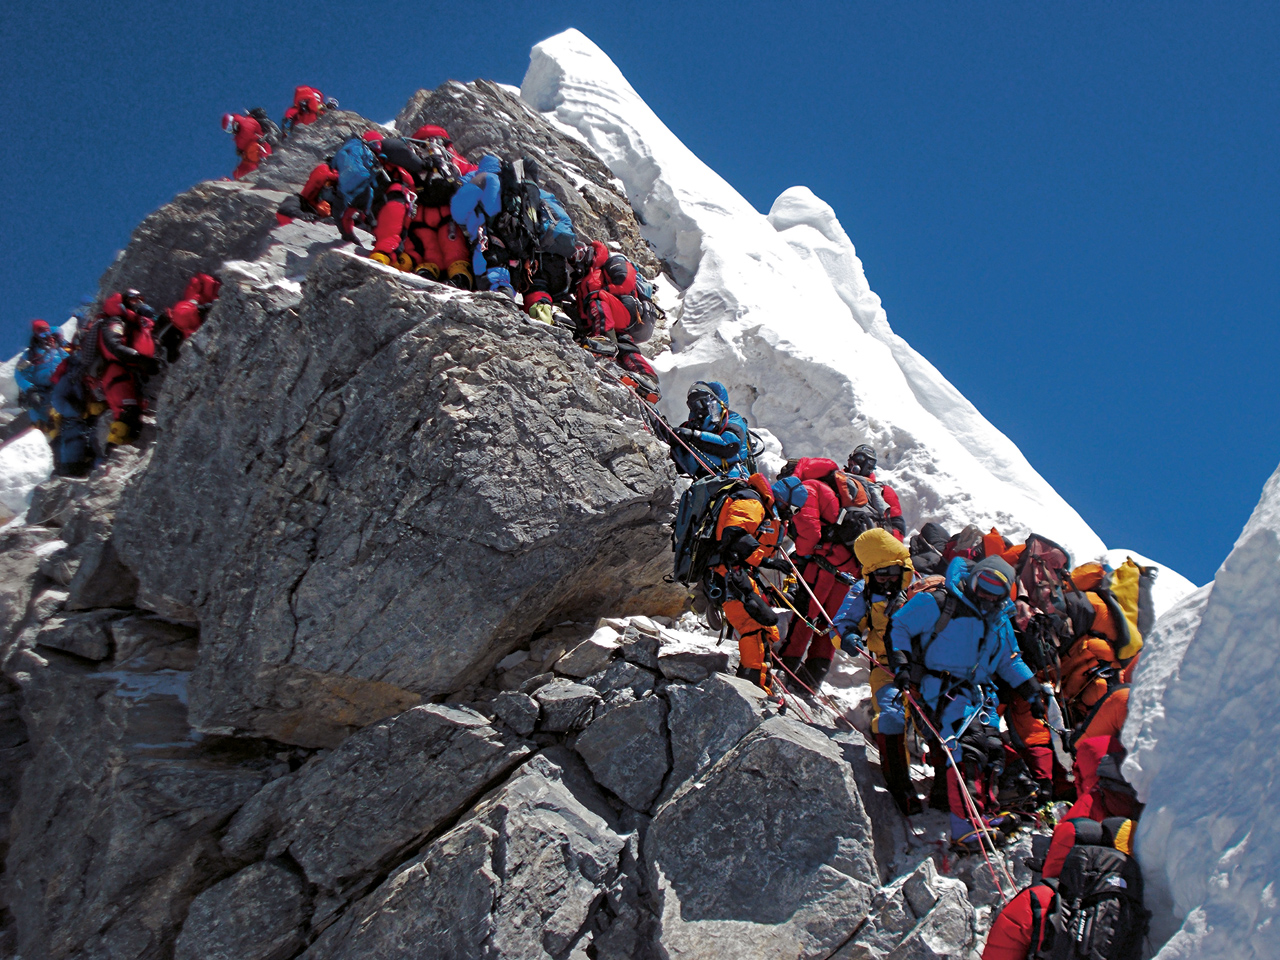 19 мая 2012: проход через Ступень Хиллари, узкому, 12-и метровому скальному участку, чуть ниже вершины Эвереста. В этой очереди своего прохода альпинисты ожидали более 2-х часов! В этот день на вершину Эвереста взошли 234 человека и четыре человека погибли